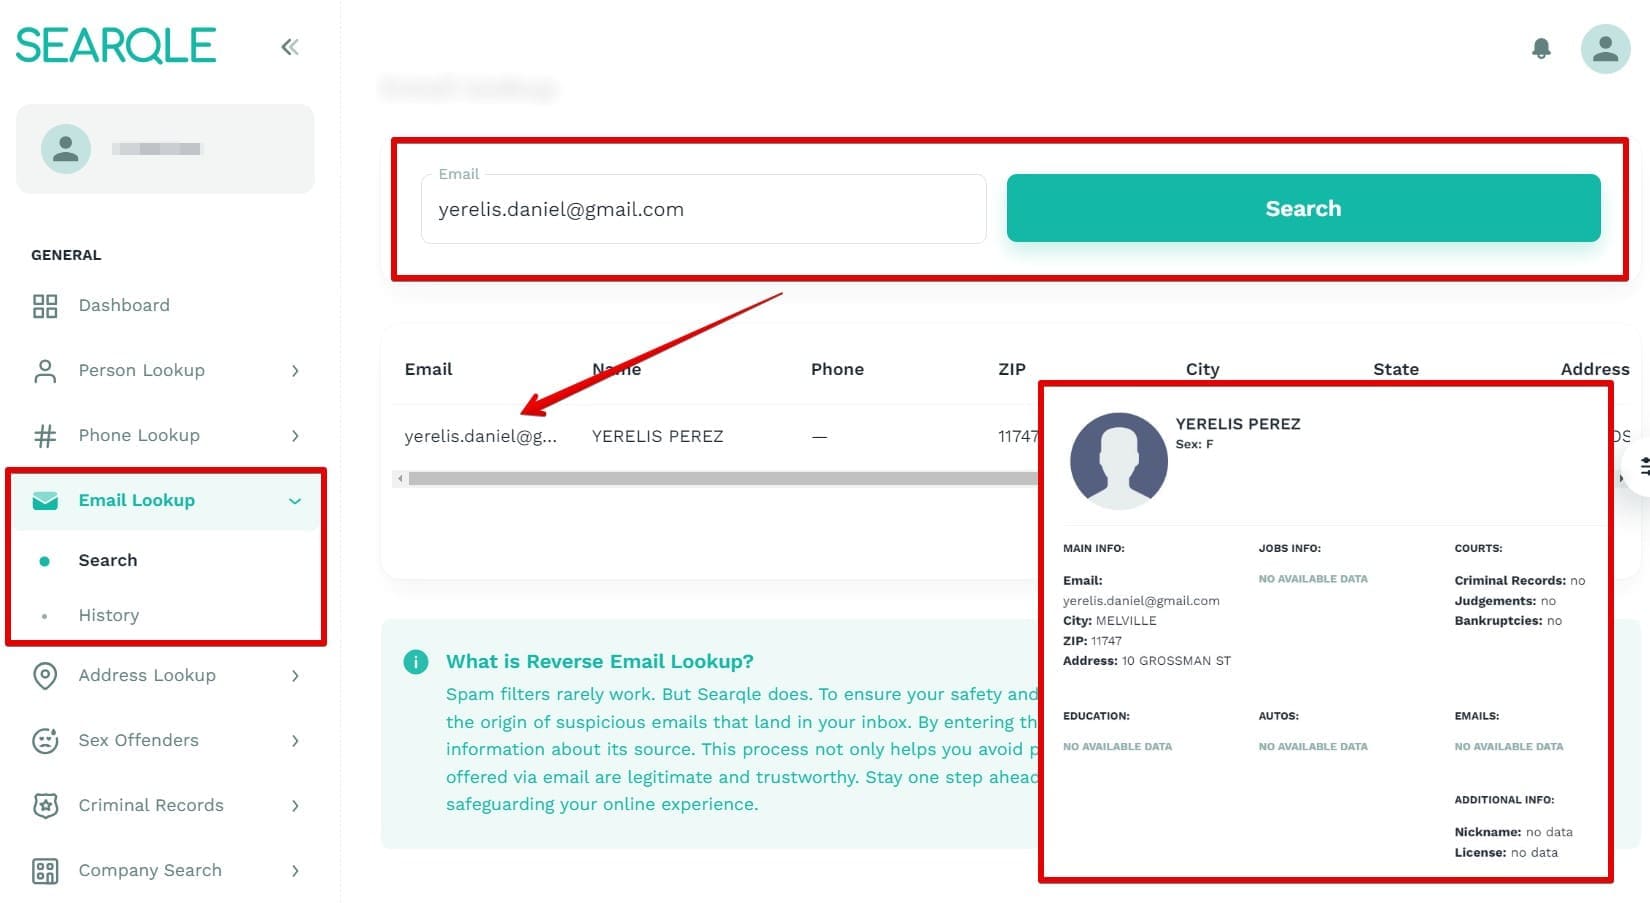 Immagine che mostra come trovare una persona per indirizzo e-mail su Searqle e quali dati saranno visibili in una ricerca